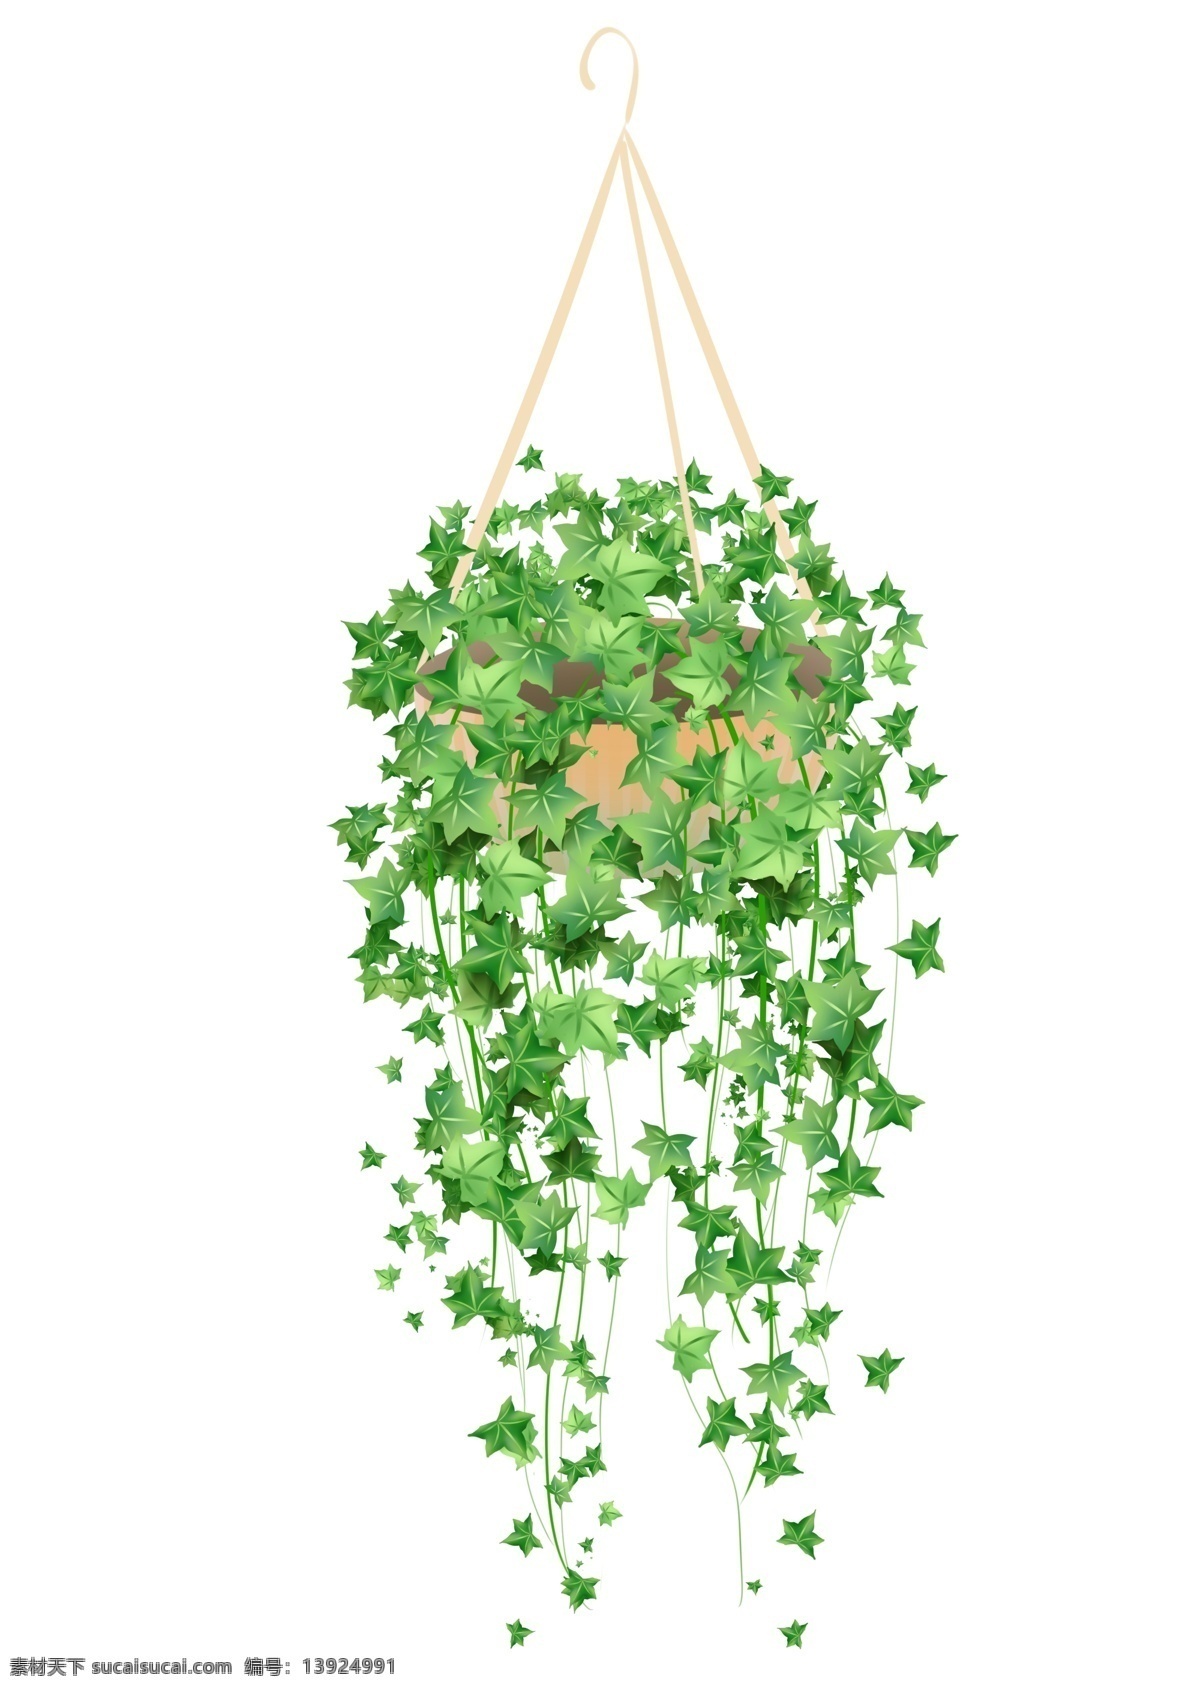 原创 手绘 常春藤 植物 吊篮 装饰 植物吊篮 装饰图案 ps 自然 叶子